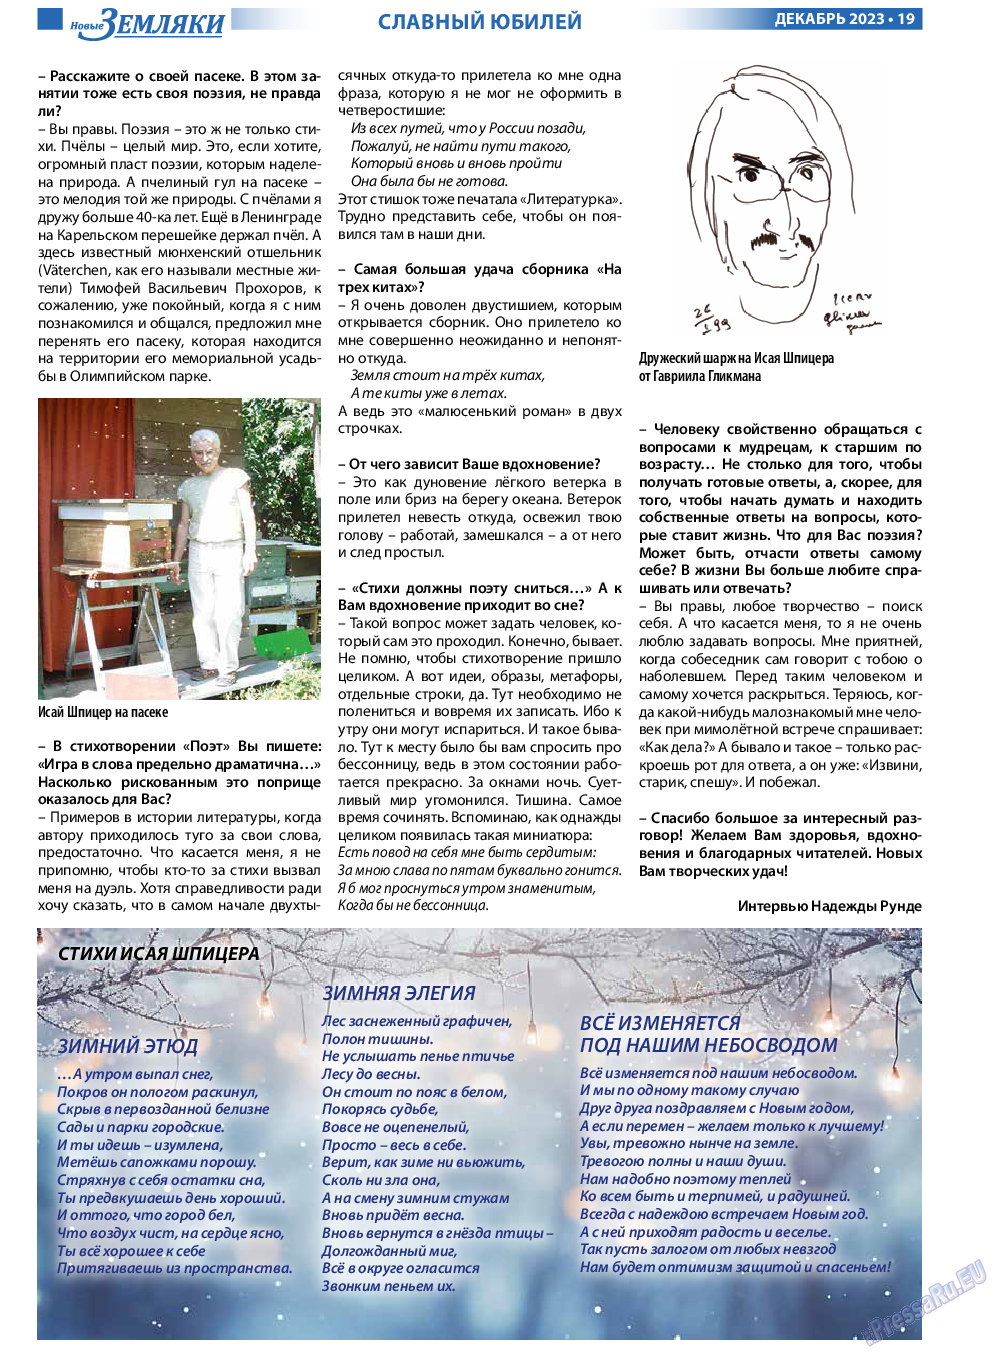 Новые Земляки, газета. 2023 №12 стр.19